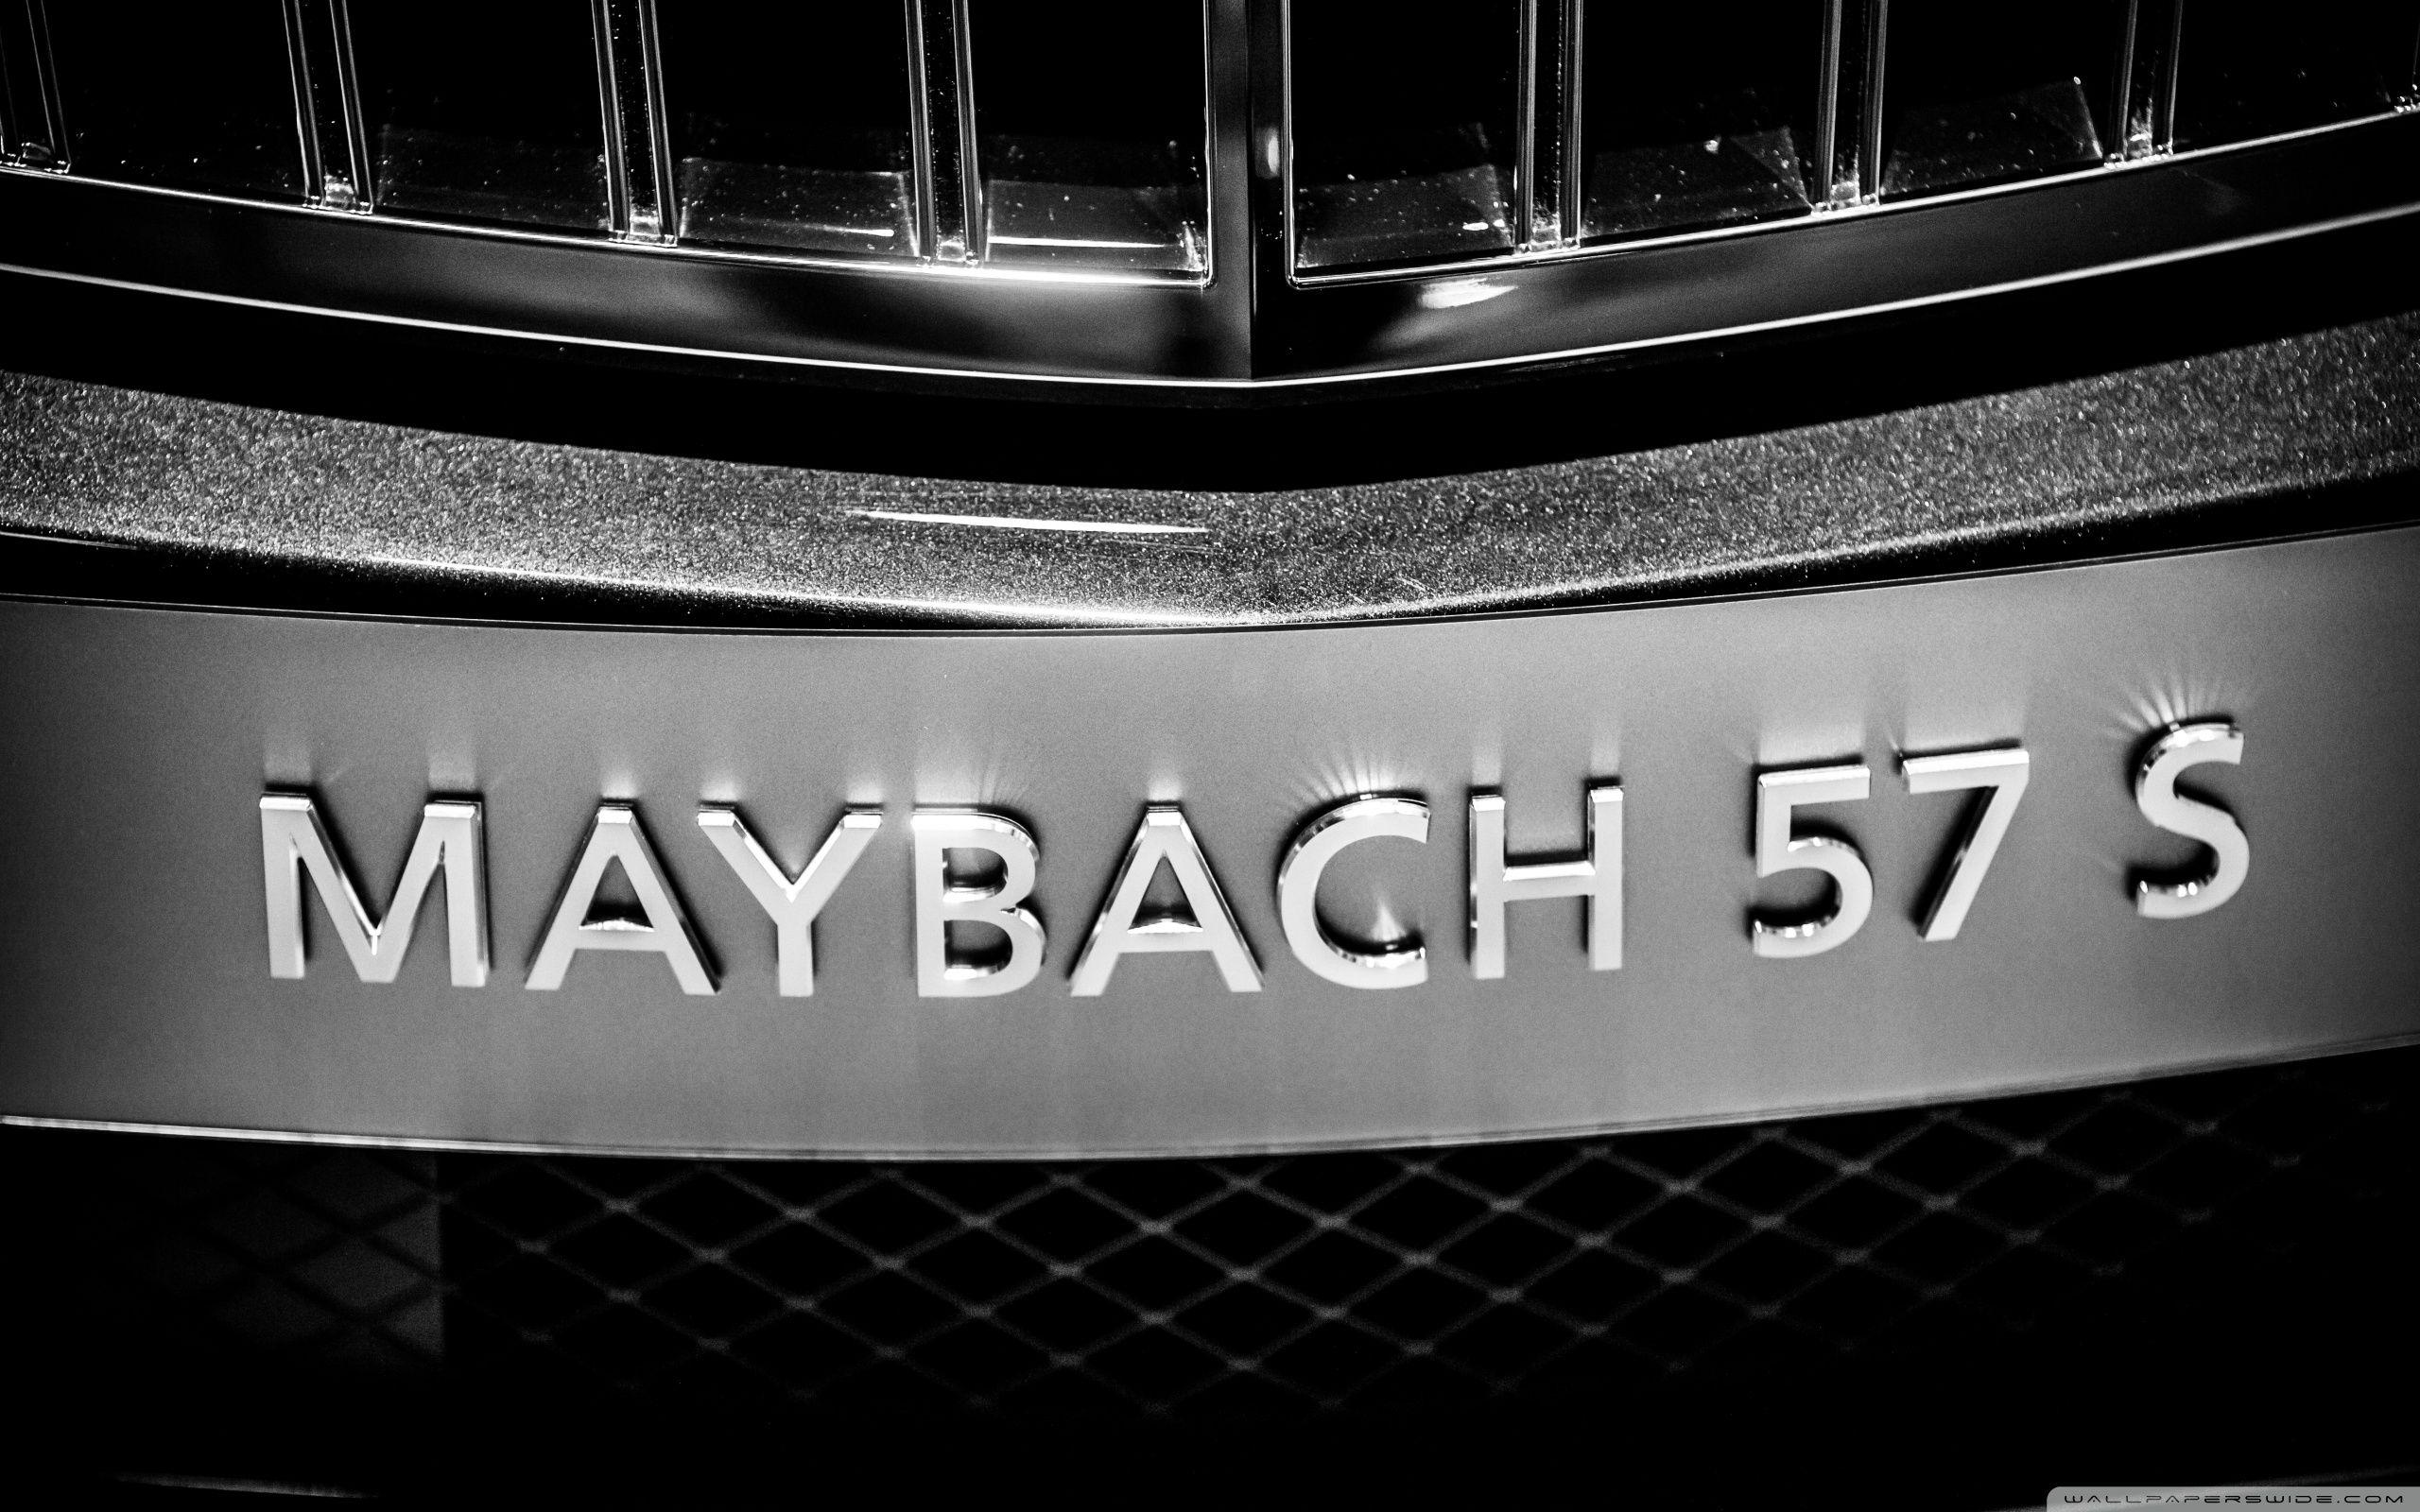 Maybach 57 S ❤ 4K HD Desktop Wallpaper for 4K Ultra HD TV • Wide